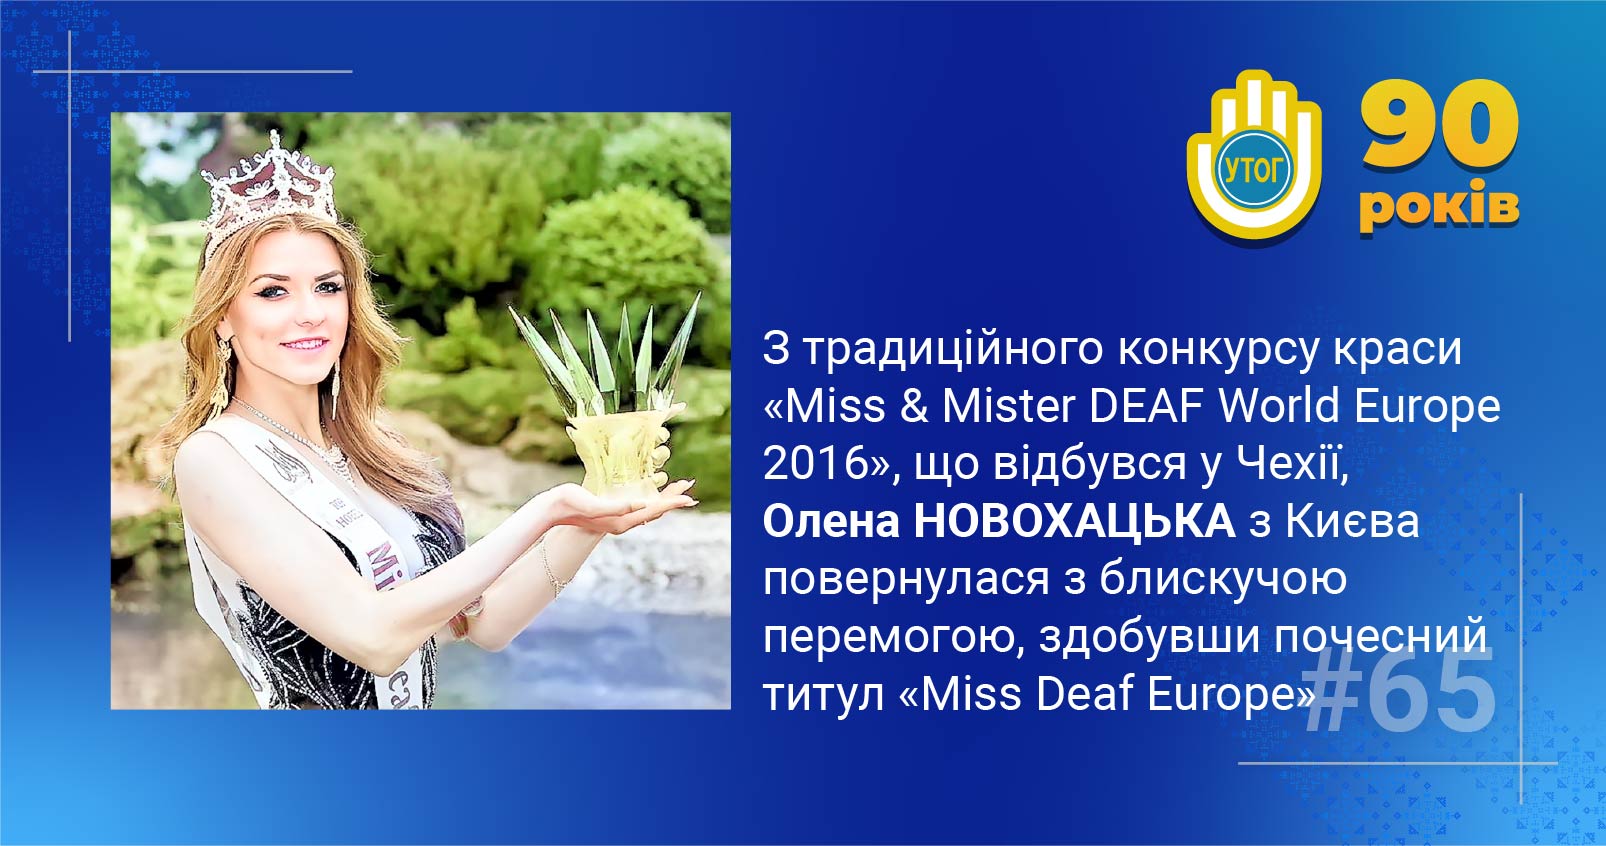 65. З традиційного конкурсу краси «Miss & Mister DEAF World Europe 2016», що відбувся у Чехії, Олена Новохацька повернулася з блискучою перемогою, здобувши почесний титул «Miss Deaf Europe»